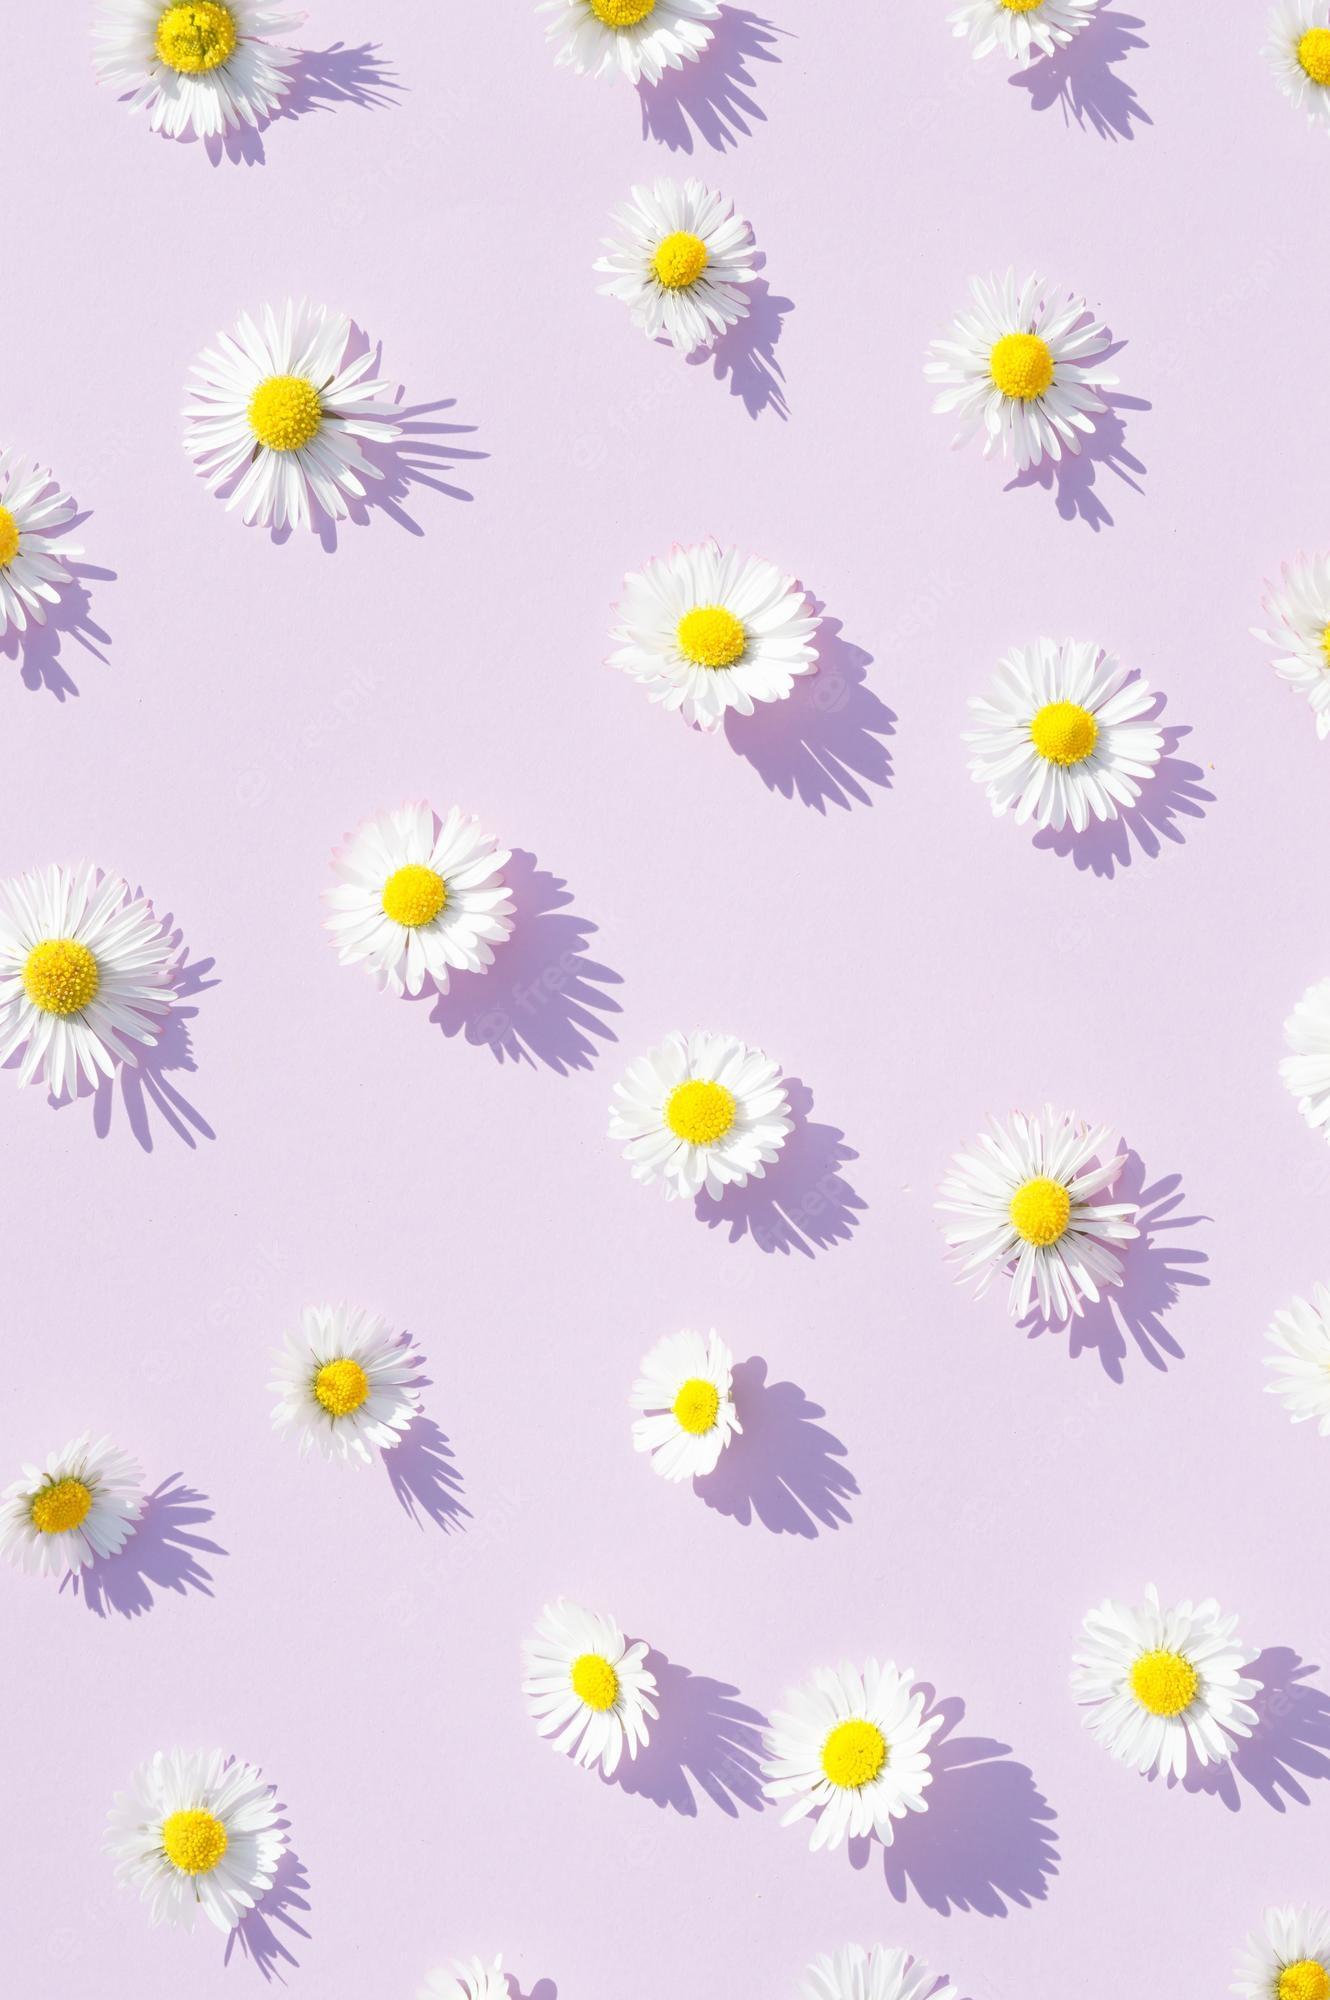 purple daisy flower wallpaper